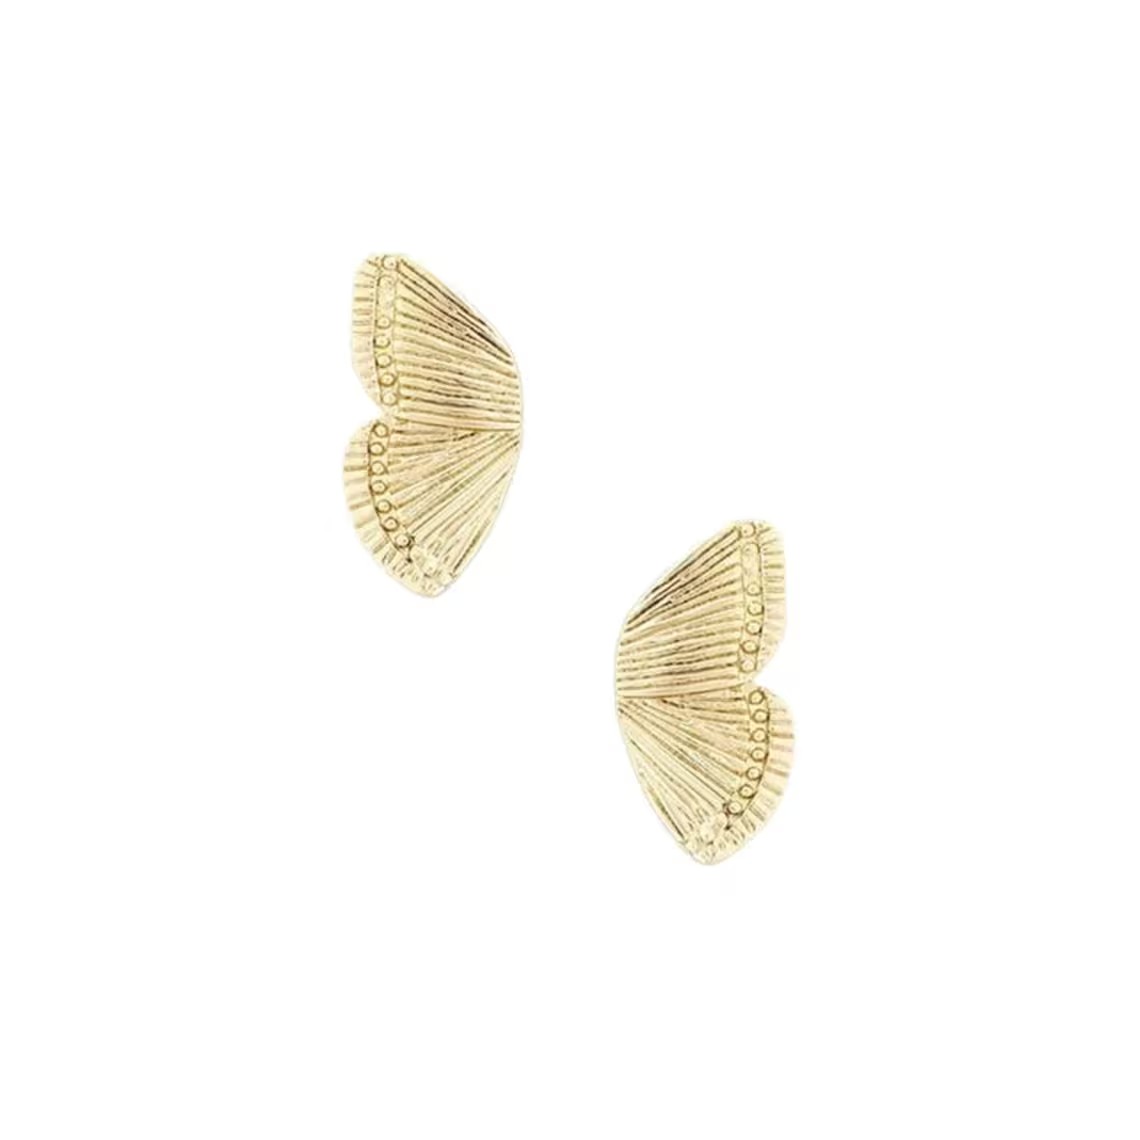 Butterfly Wings Earrings Simple Half Wing Stud Earrings